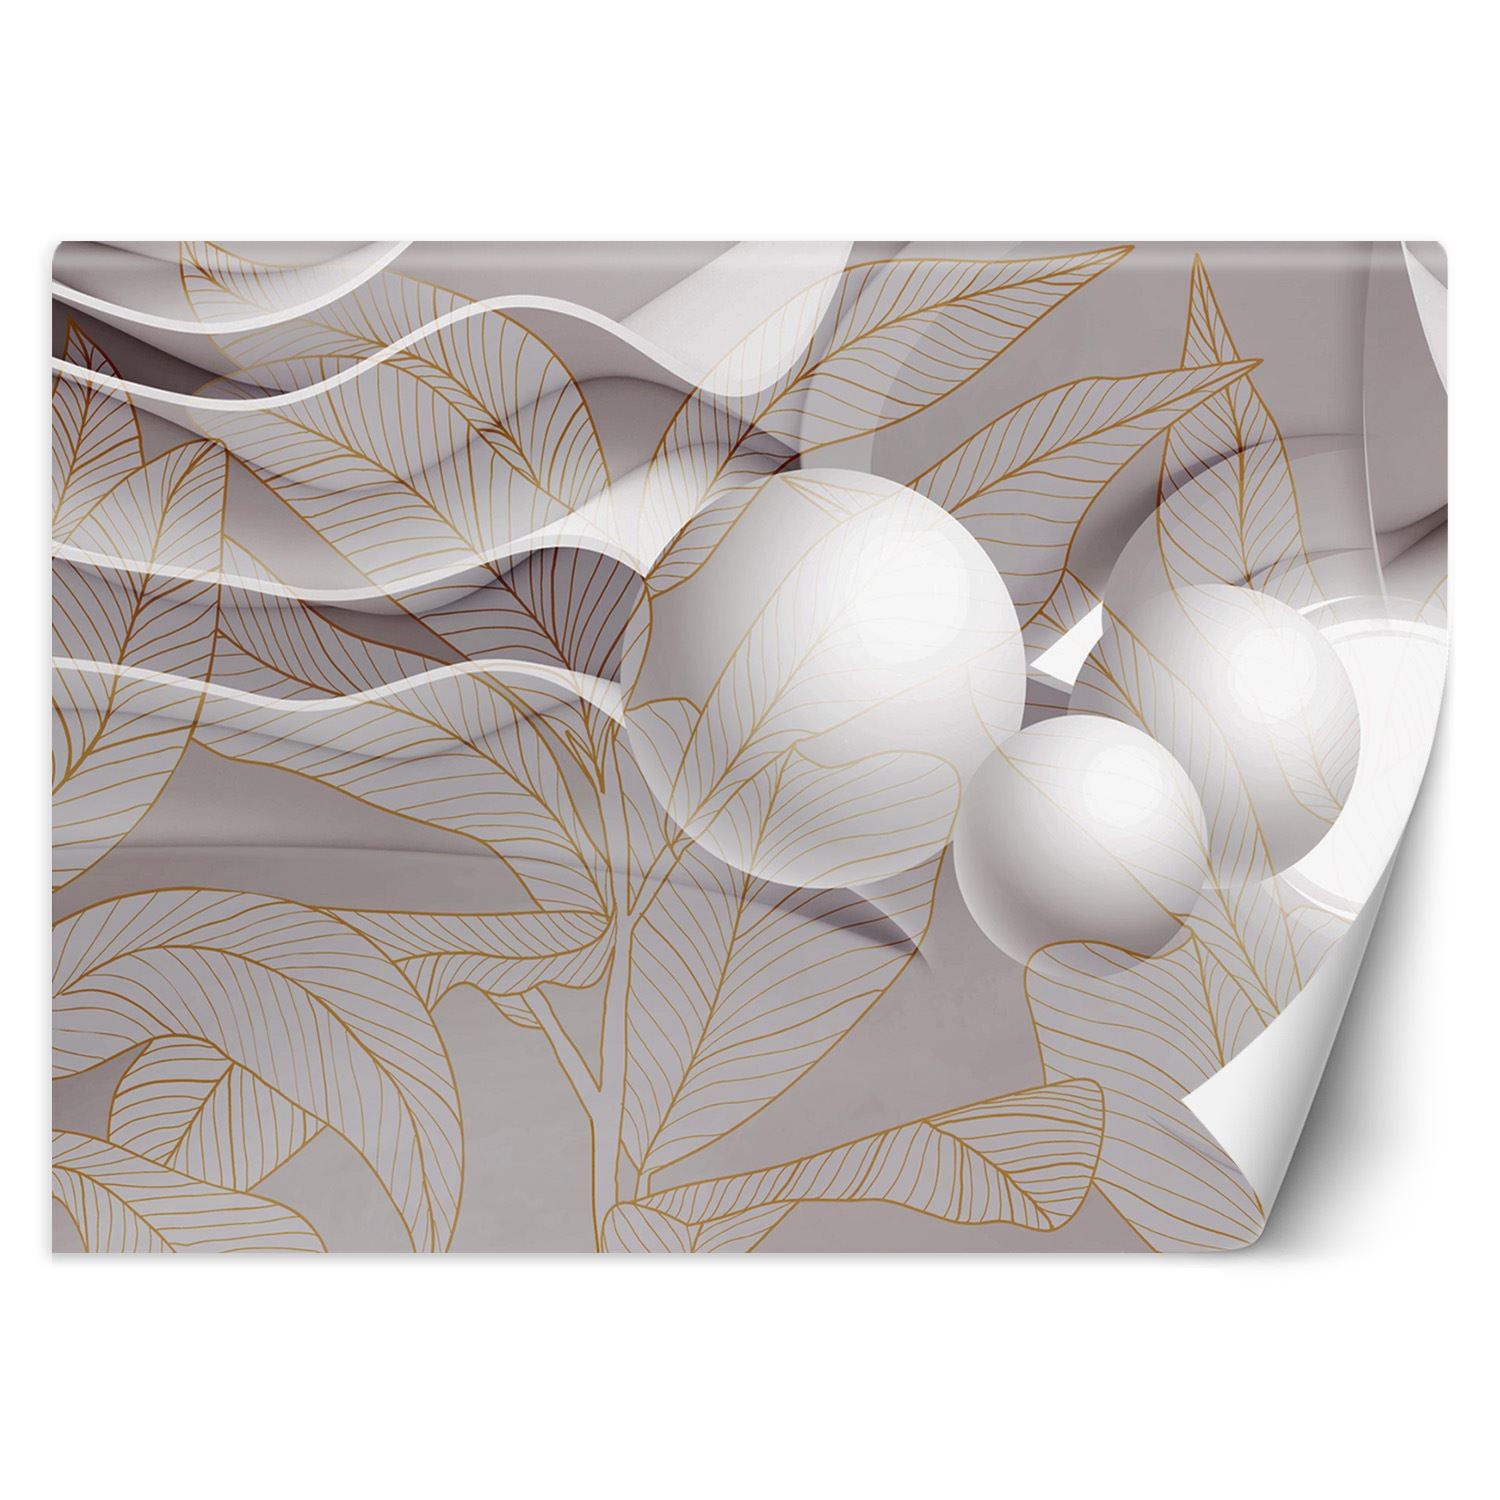 Trend24 – Behang – Goudbladeren En Ballen 3D – Vliesbehang – Fotobehang 3D – Behang Woonkamer – 350x245x2 cm – Incl. behanglijm